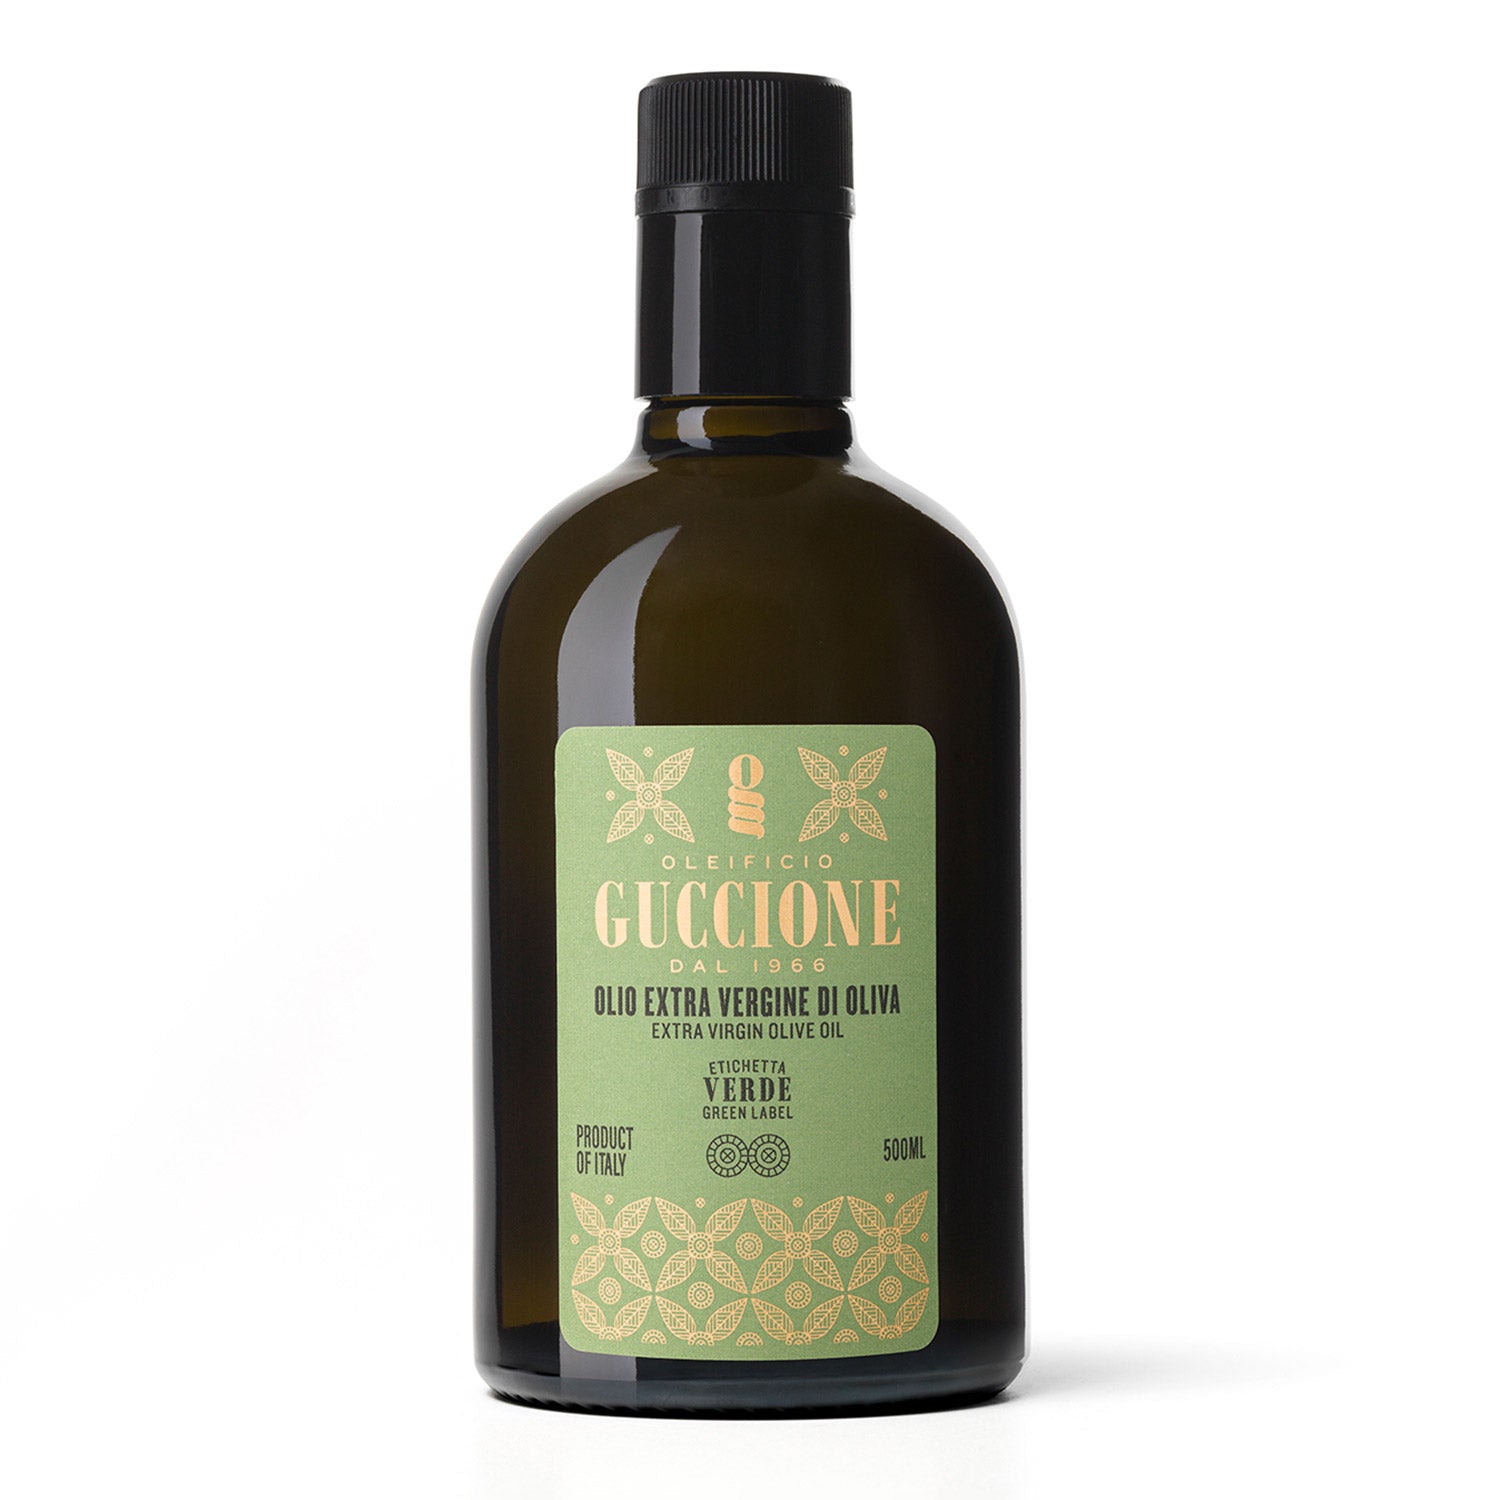 Guccione Green Label